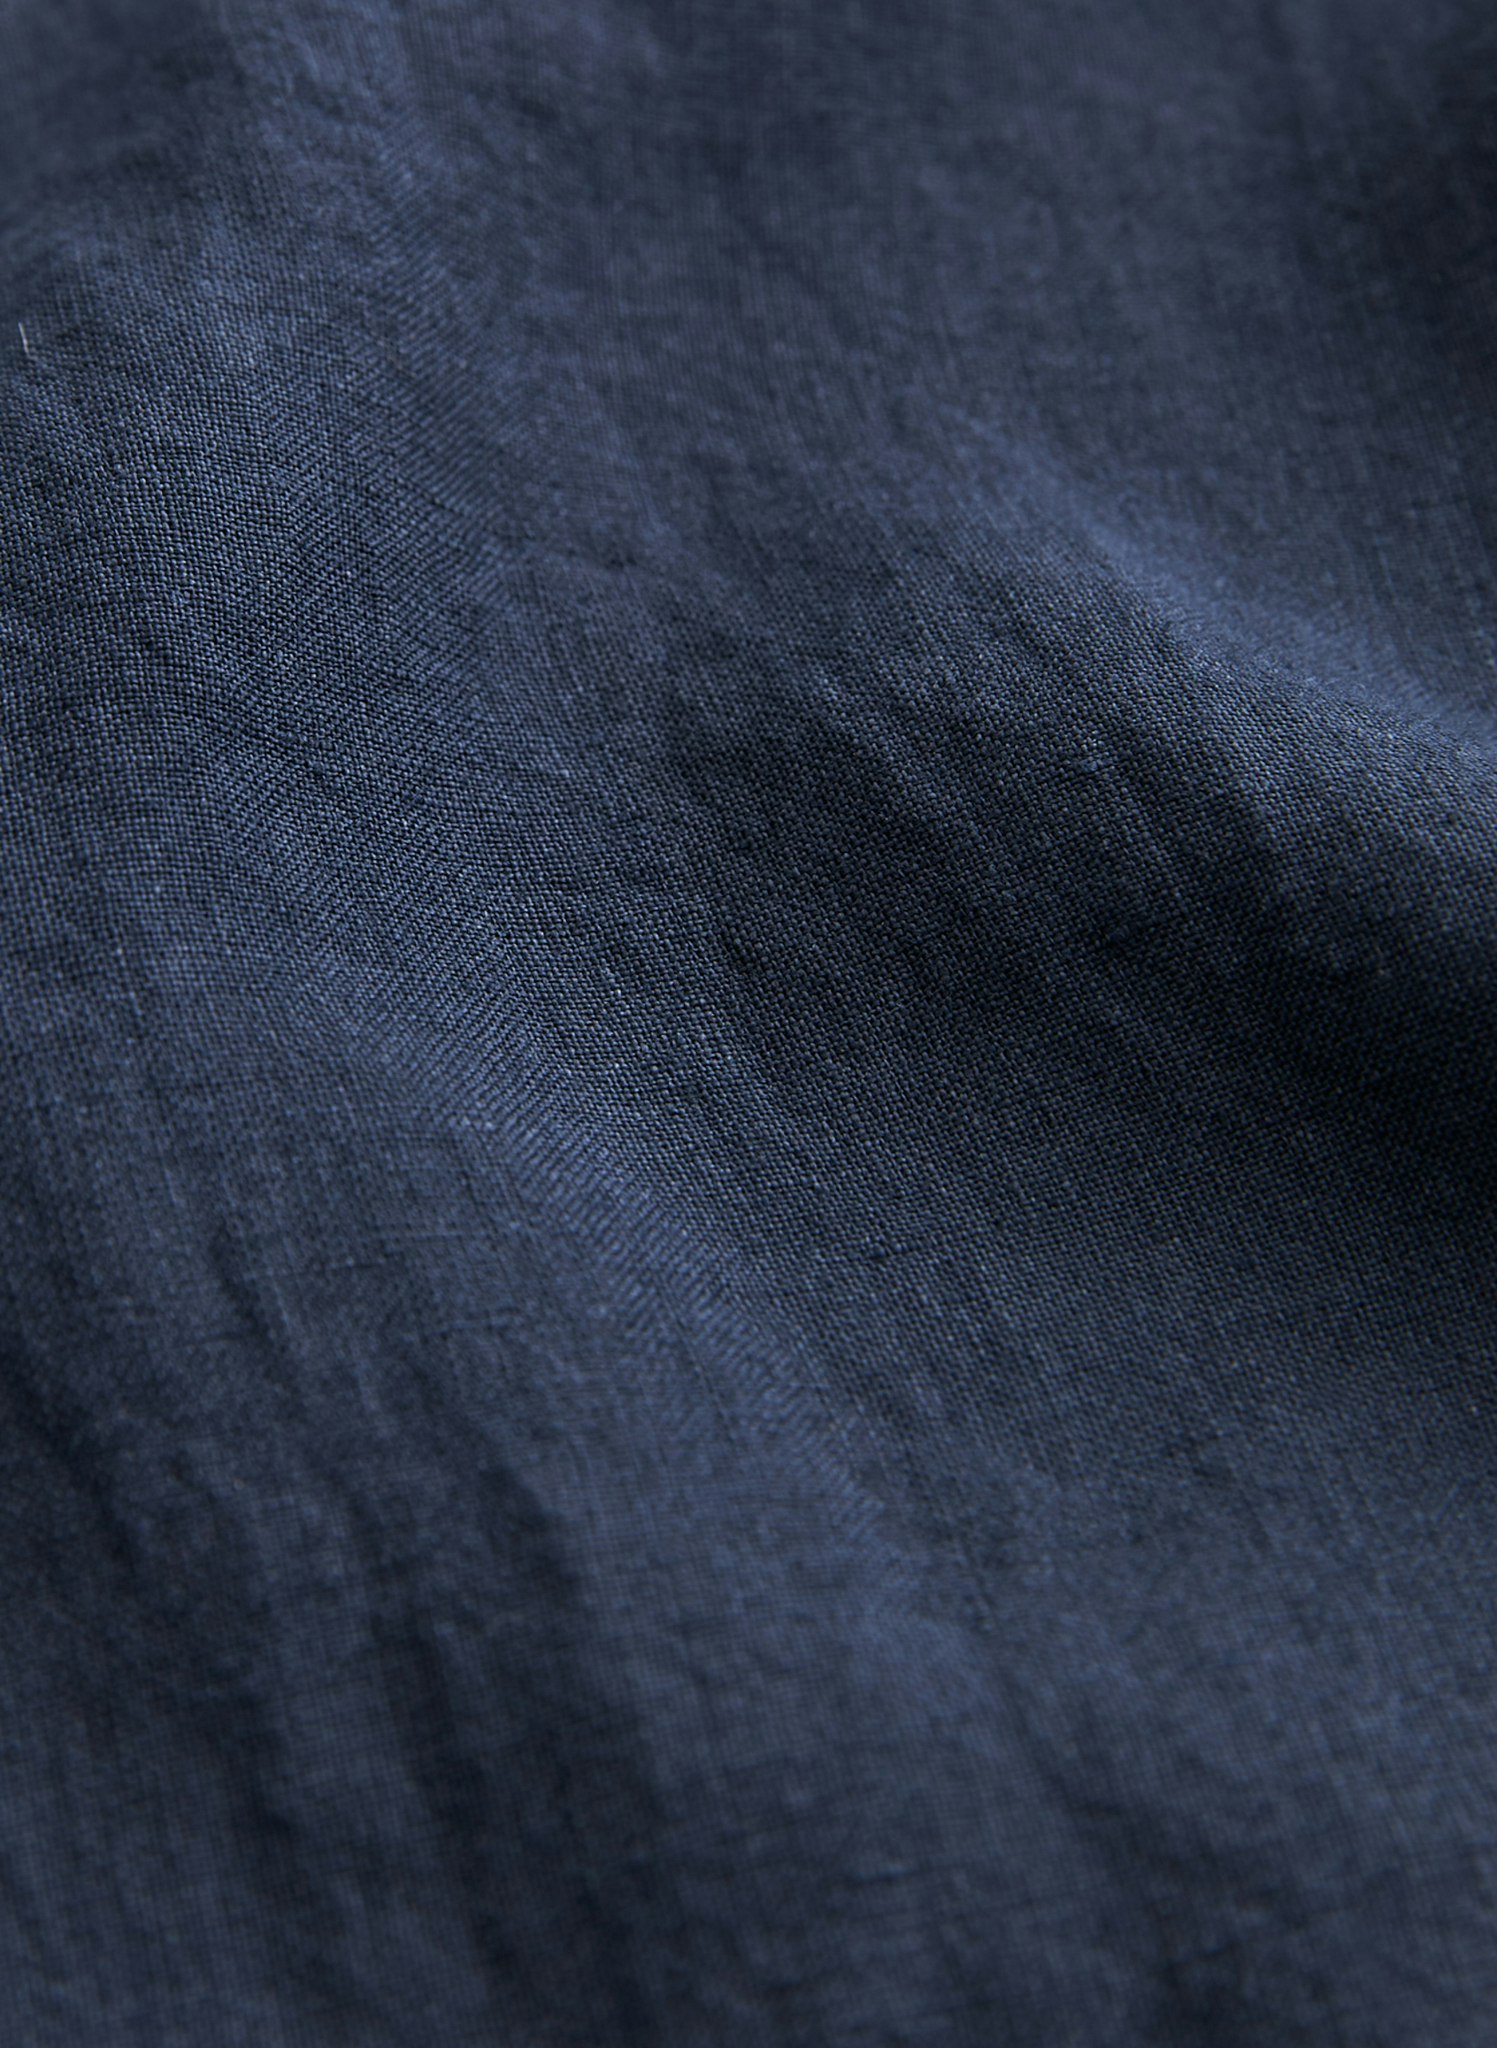 Morris - Douglas Linen Shirt, Navy Blue